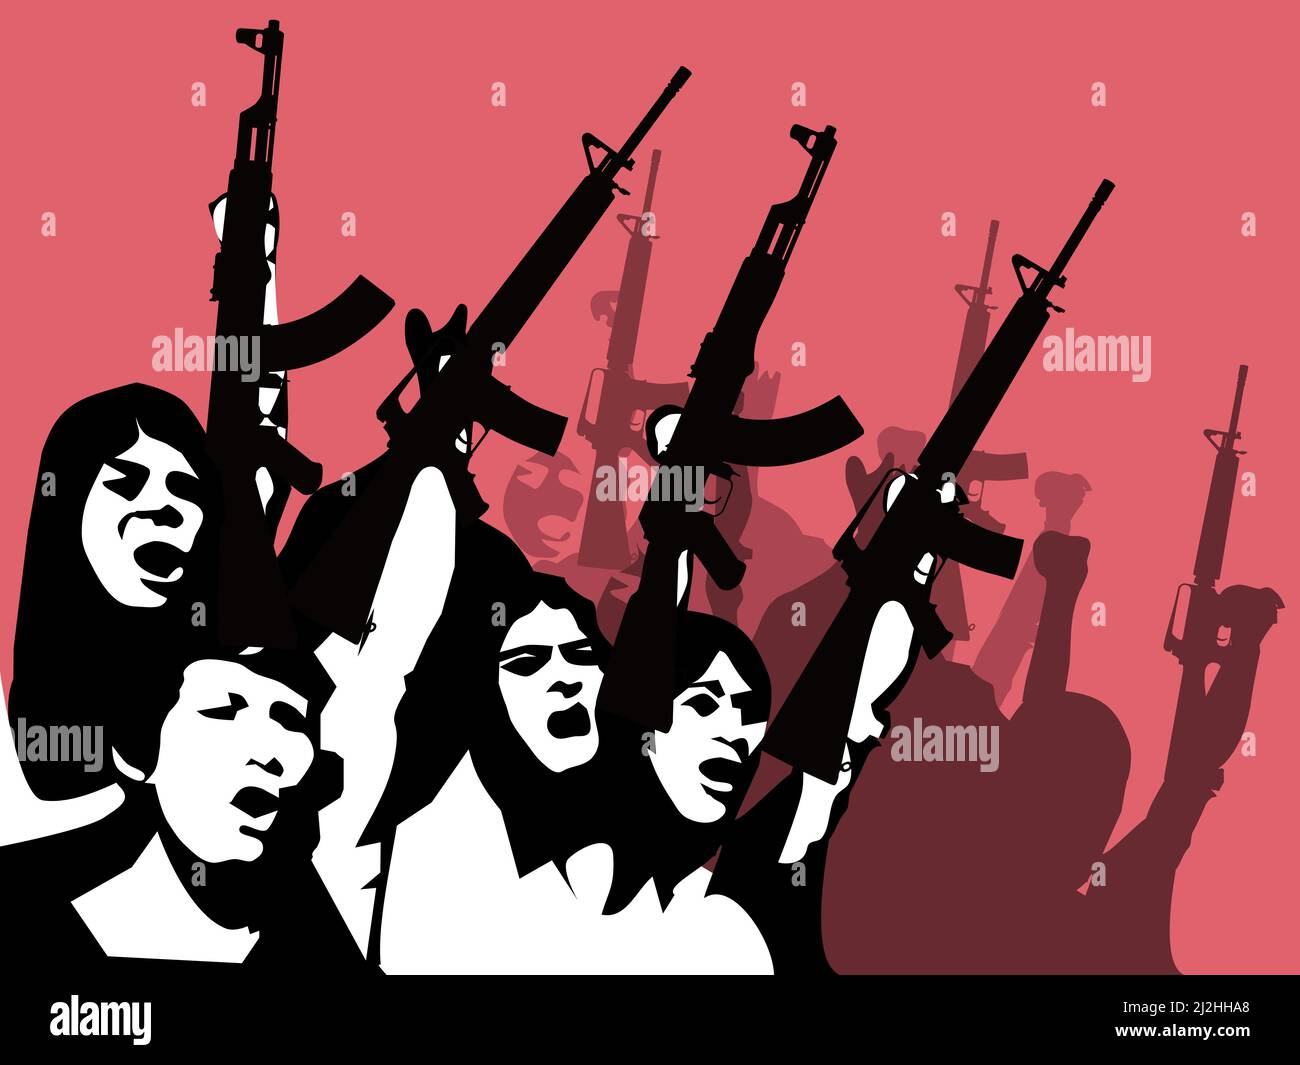 Una silhouette nera di un gruppo di persone che reggono una pistola con sfondo rosso. Illustrazione Vettoriale